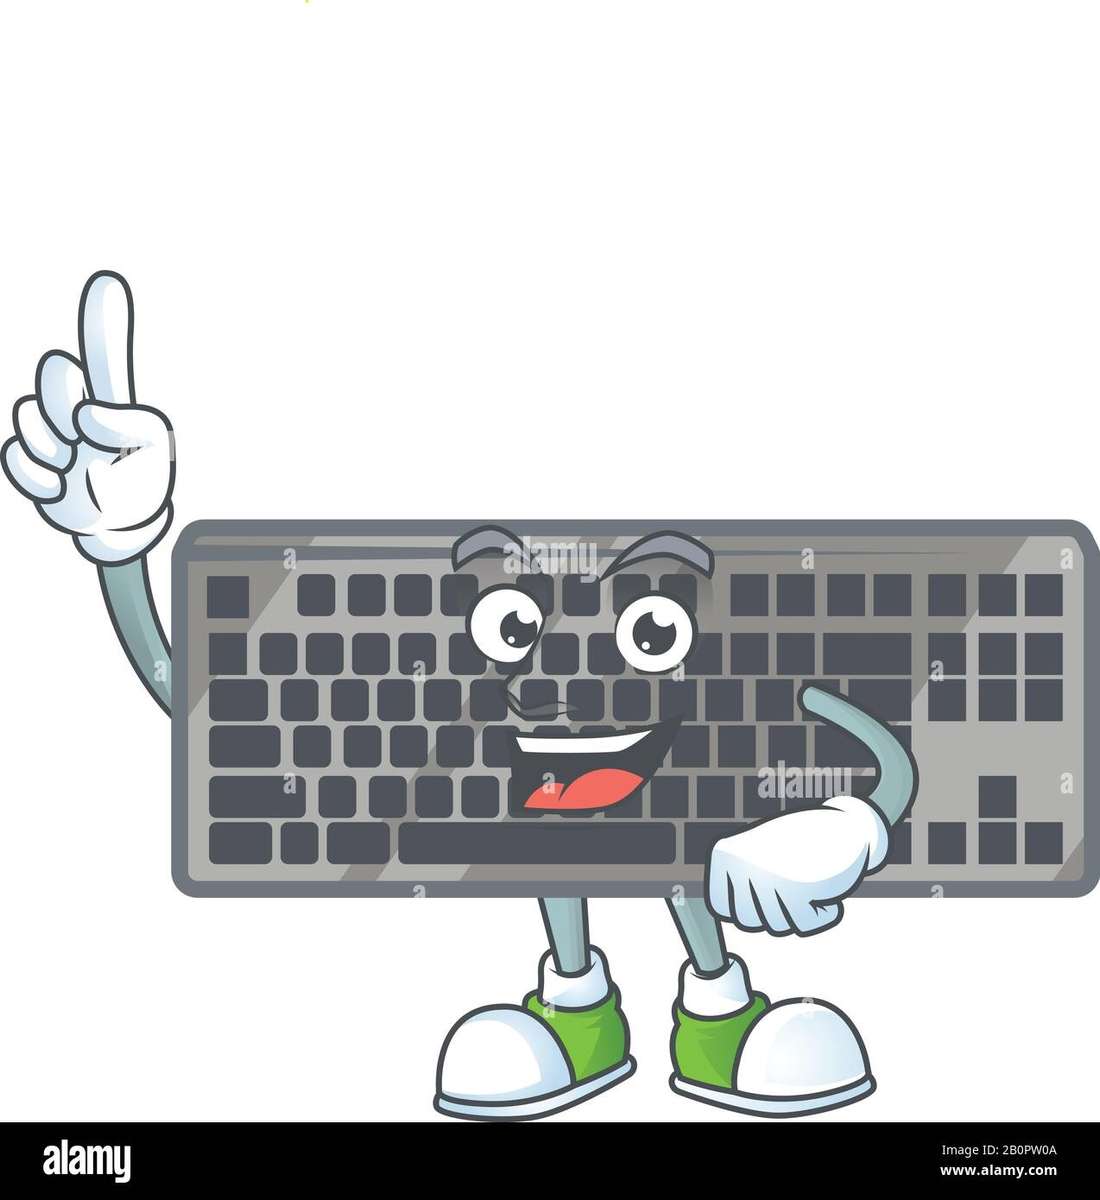 teclado para crianças peças de computador puzzle online